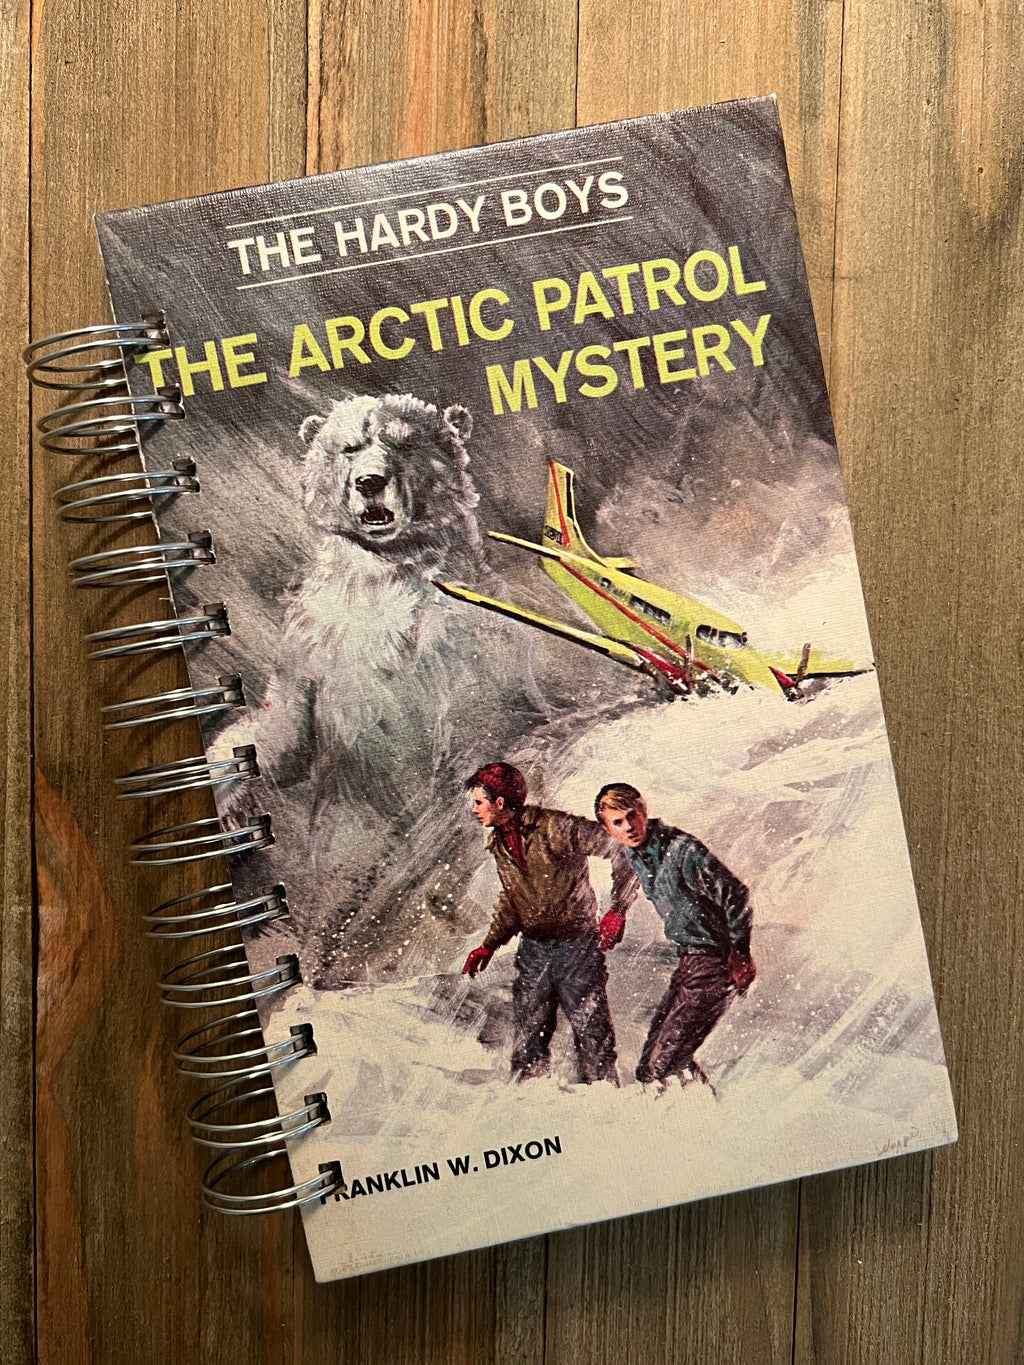 The Hardy Boys: The Arctic Patrol Mystery